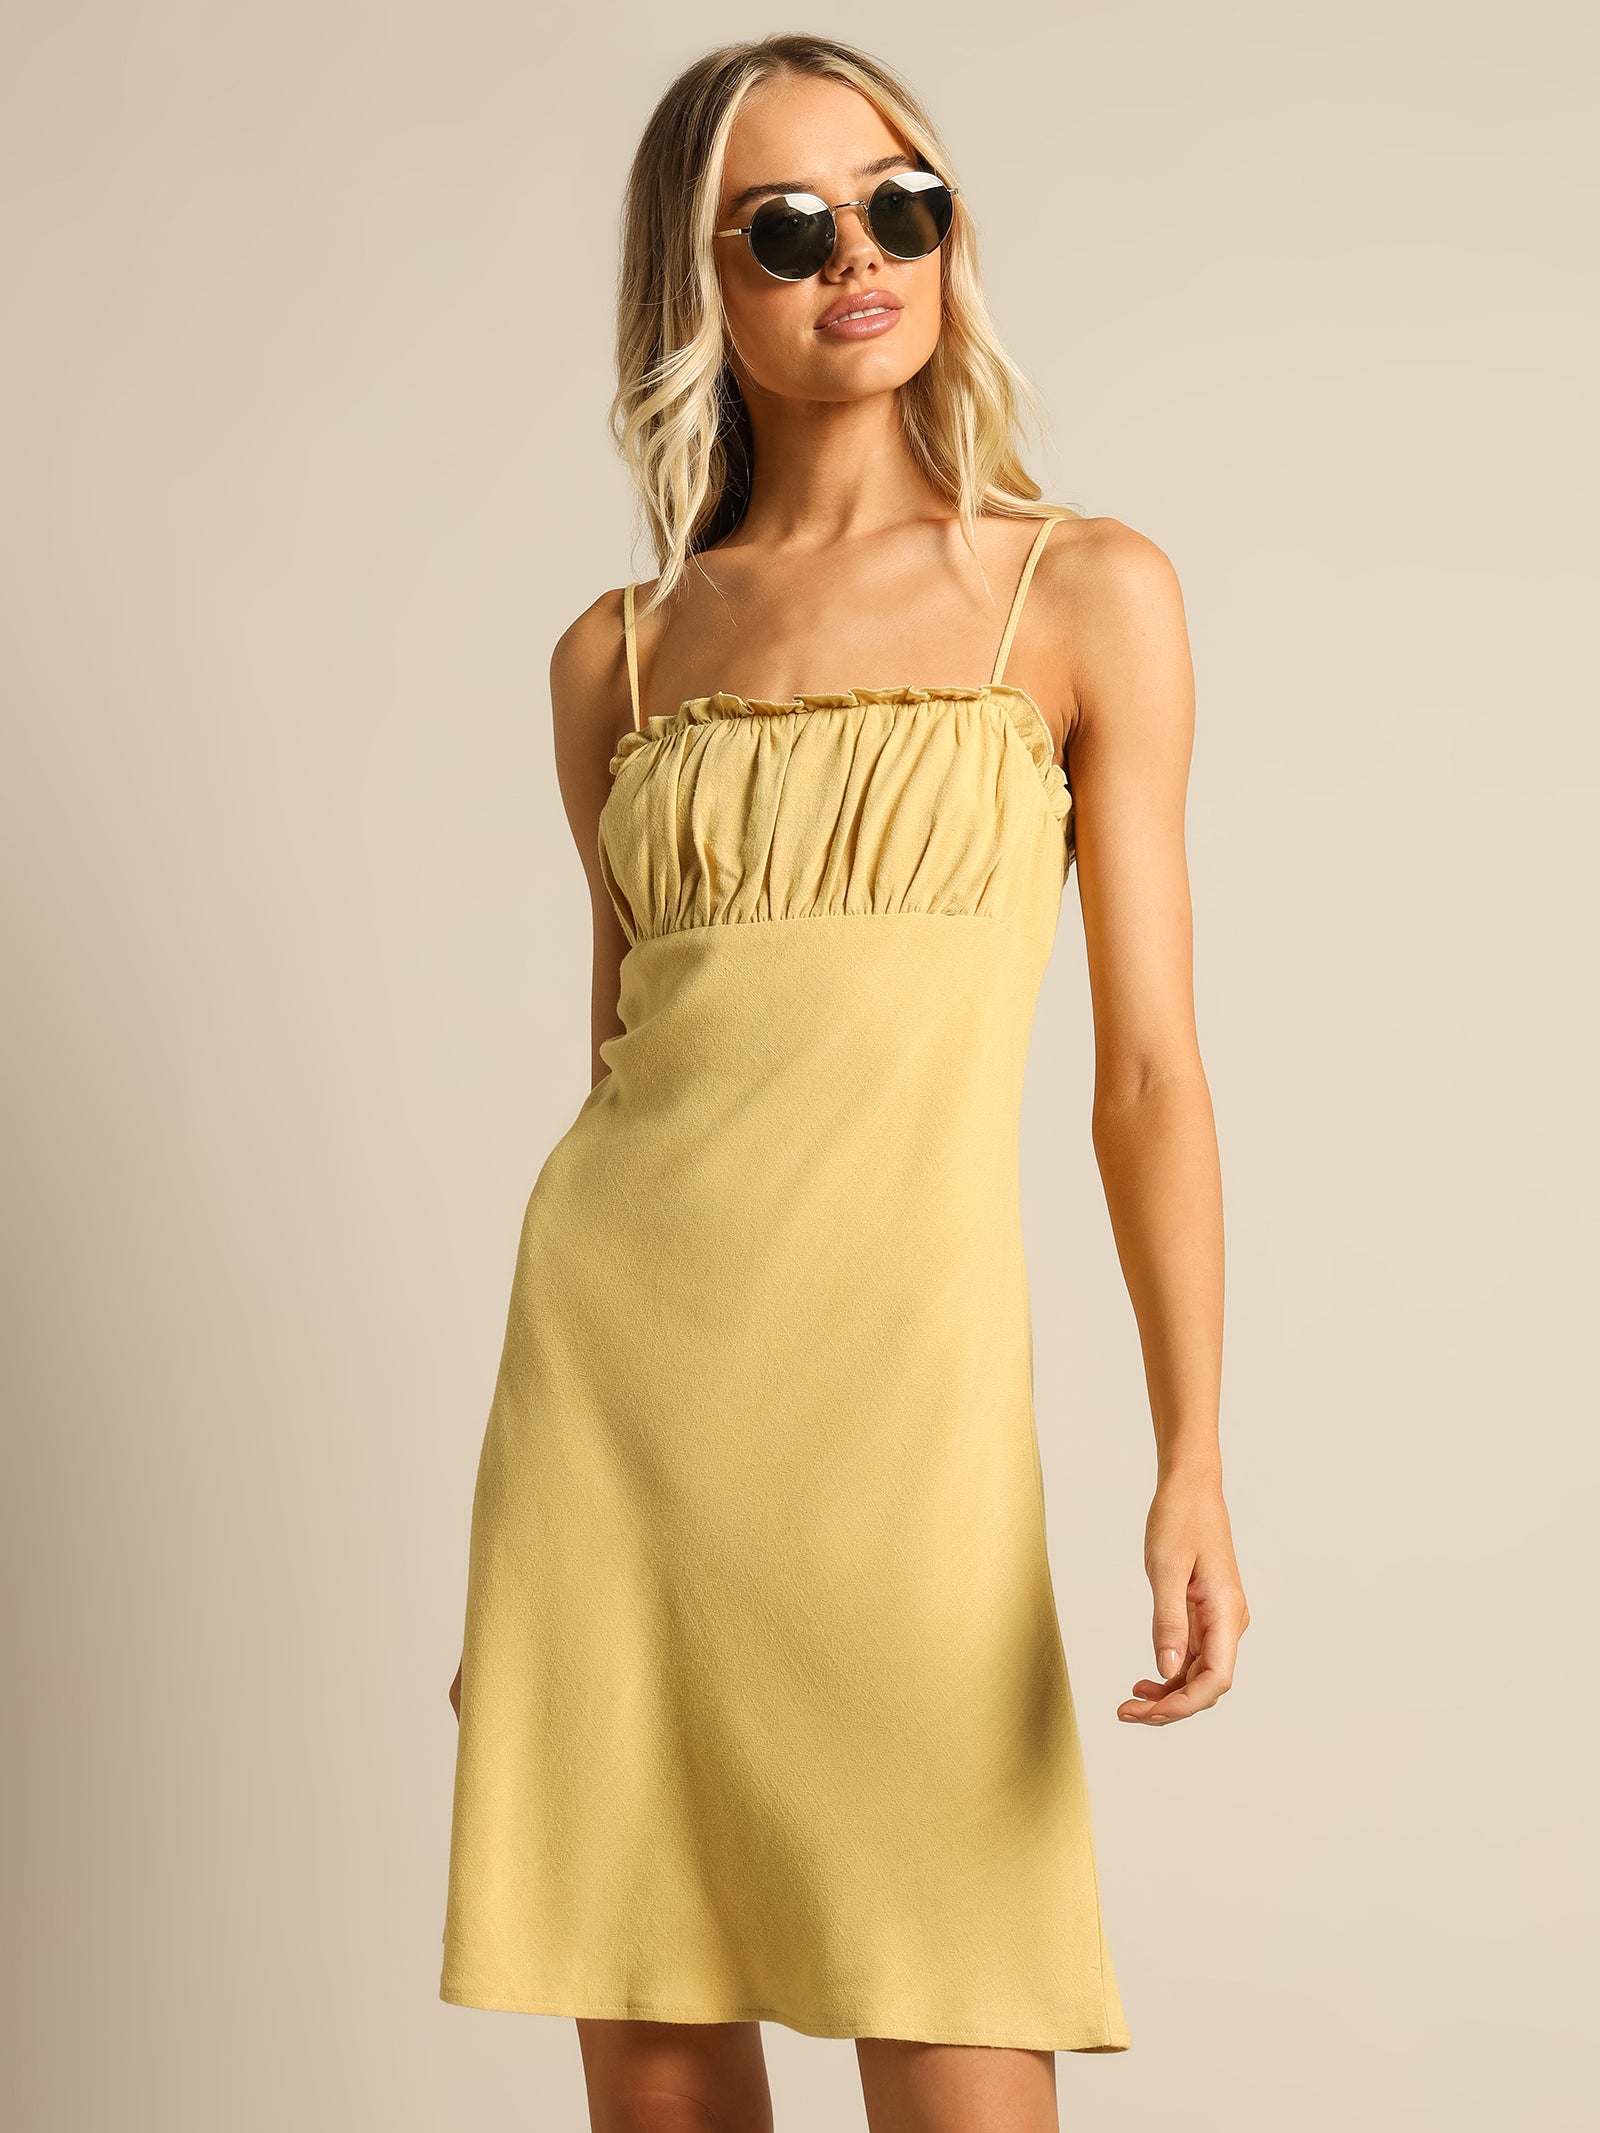 Celia Mini Dress in Lemon